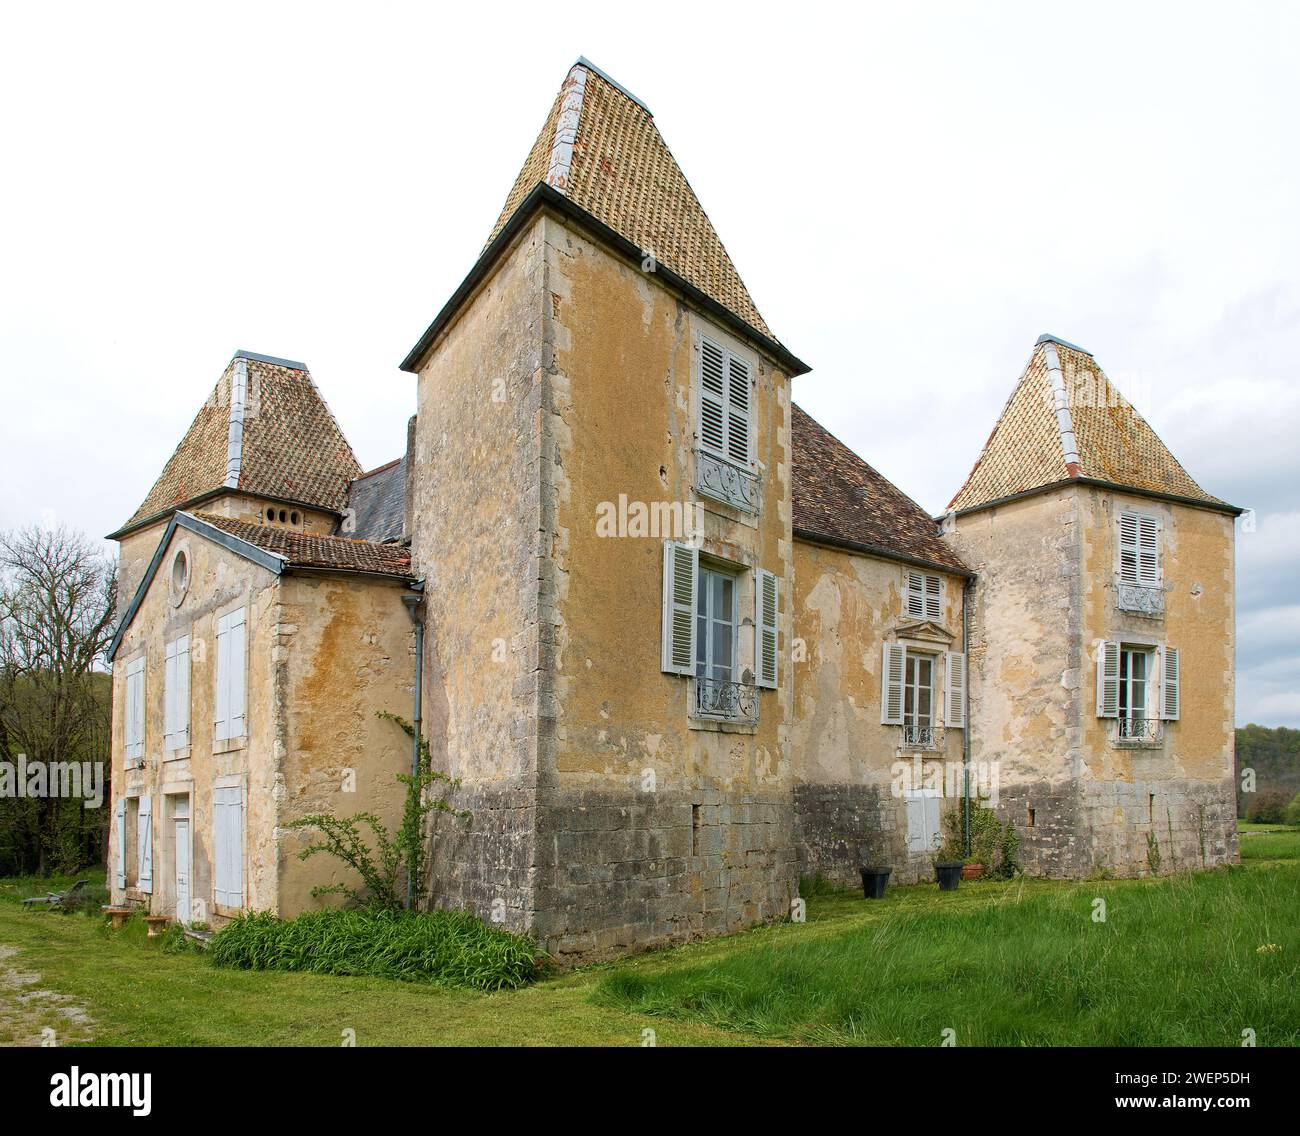 Château-de-Morteau near Cirey-lès-Mareilles, historical monument in France Stock Photo